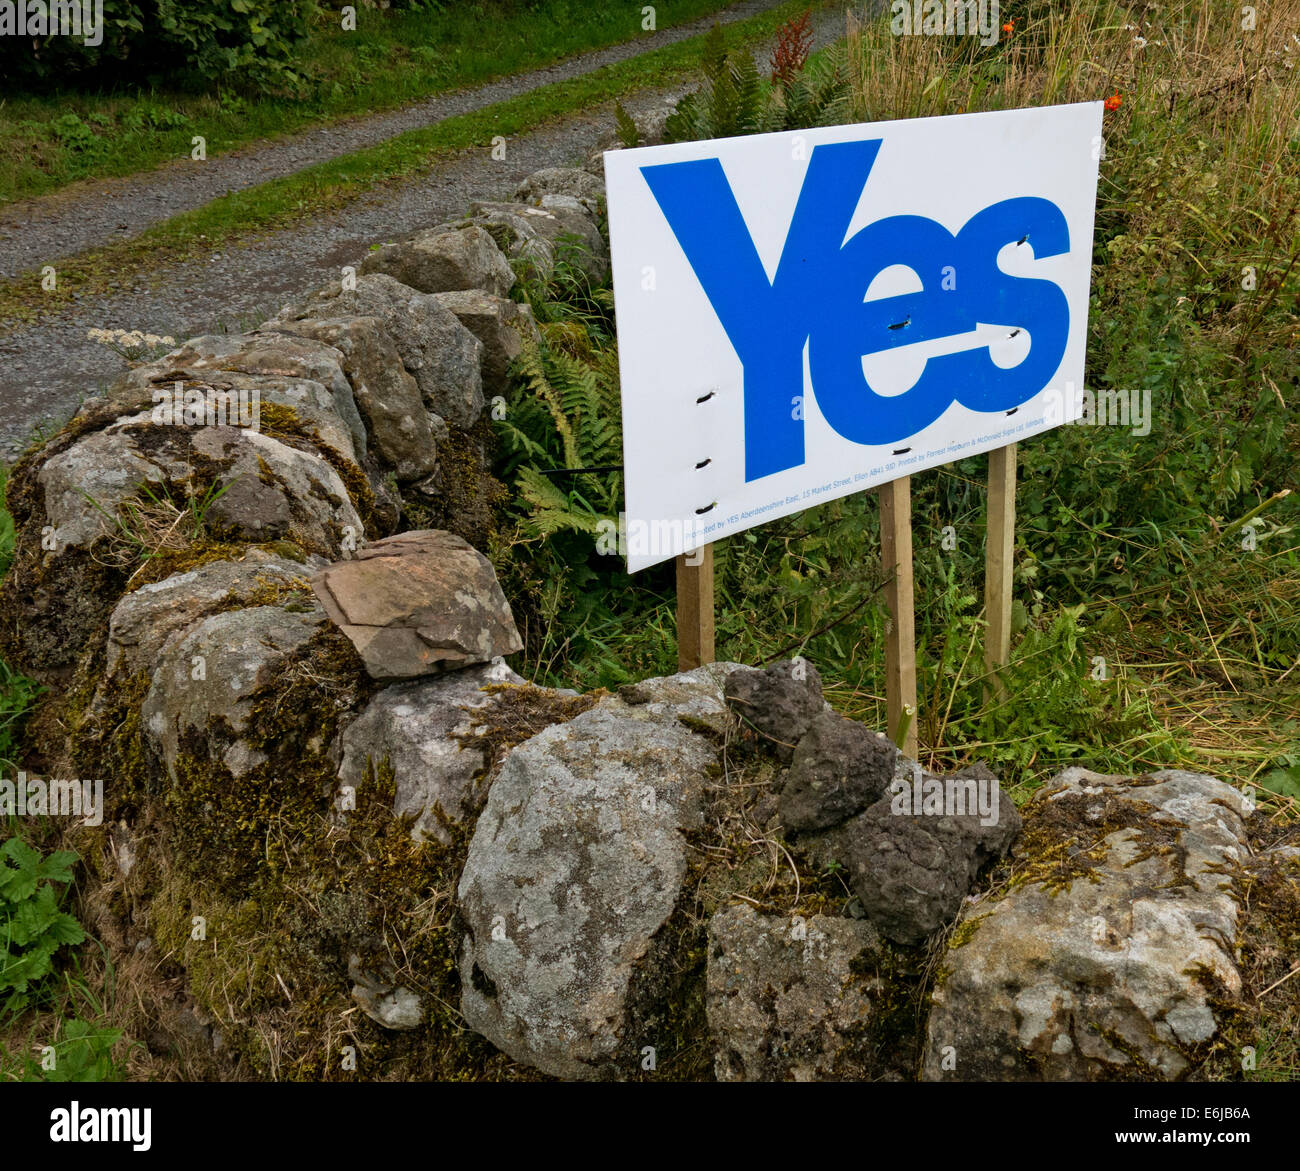 Ja zur schottischen Unabhängigkeit Zeichen auf der Carlophill Farm, Carlops, Scottish Borders, Schottland September 2014 Stockfoto